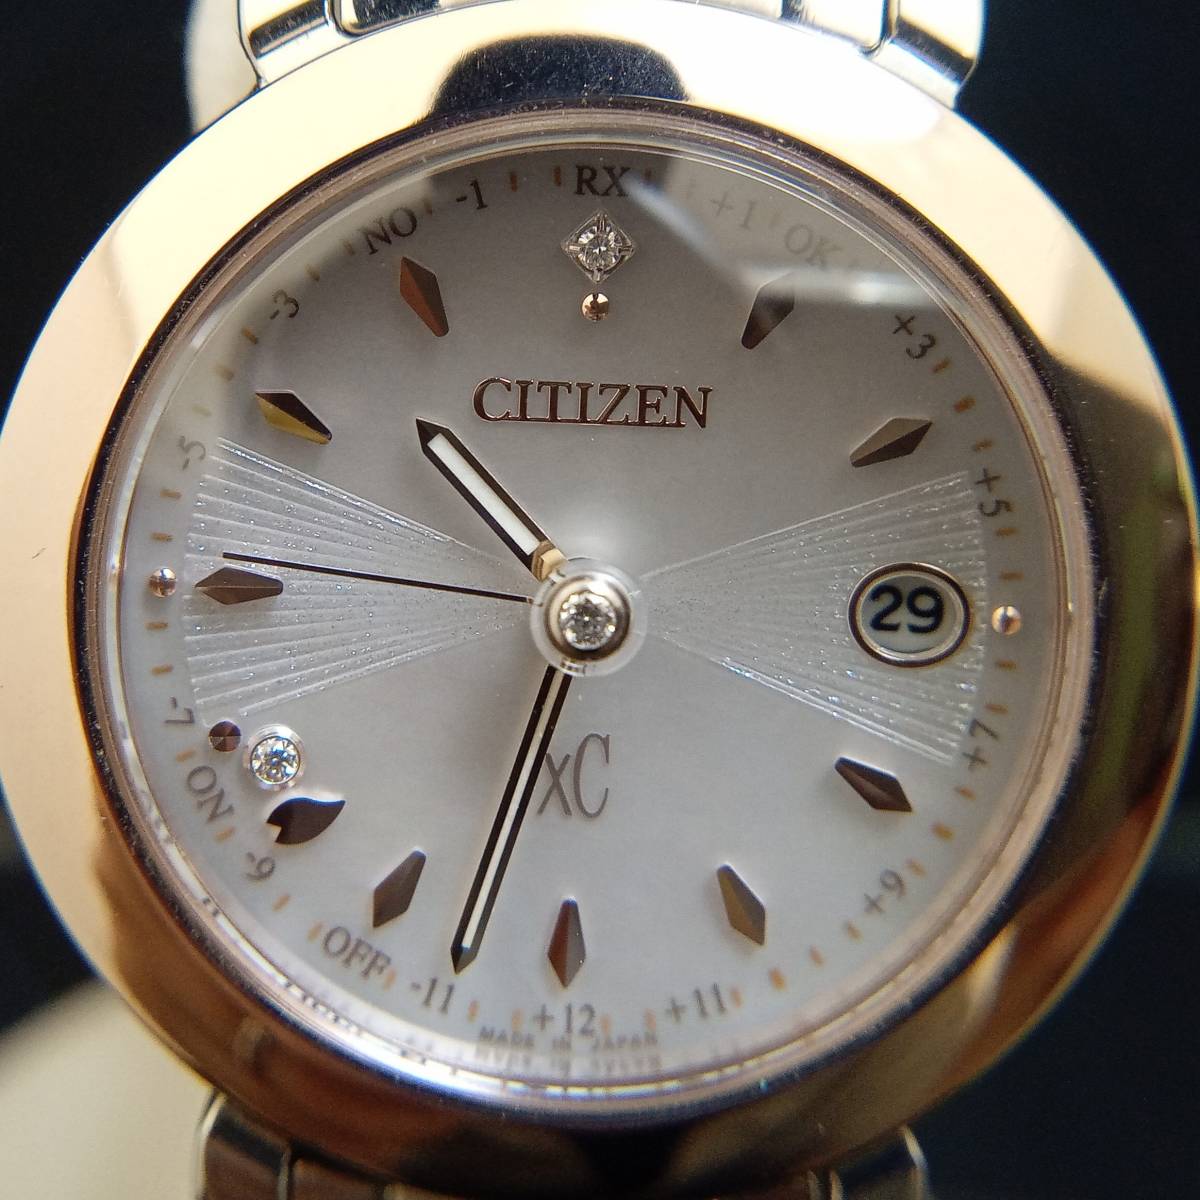 CITIZEN シチズン xC クロスシー H060-003FM01 ES9445-73W ヒカリコレクション フローレットダイヤモデル 電波ソーラー レディース腕時計